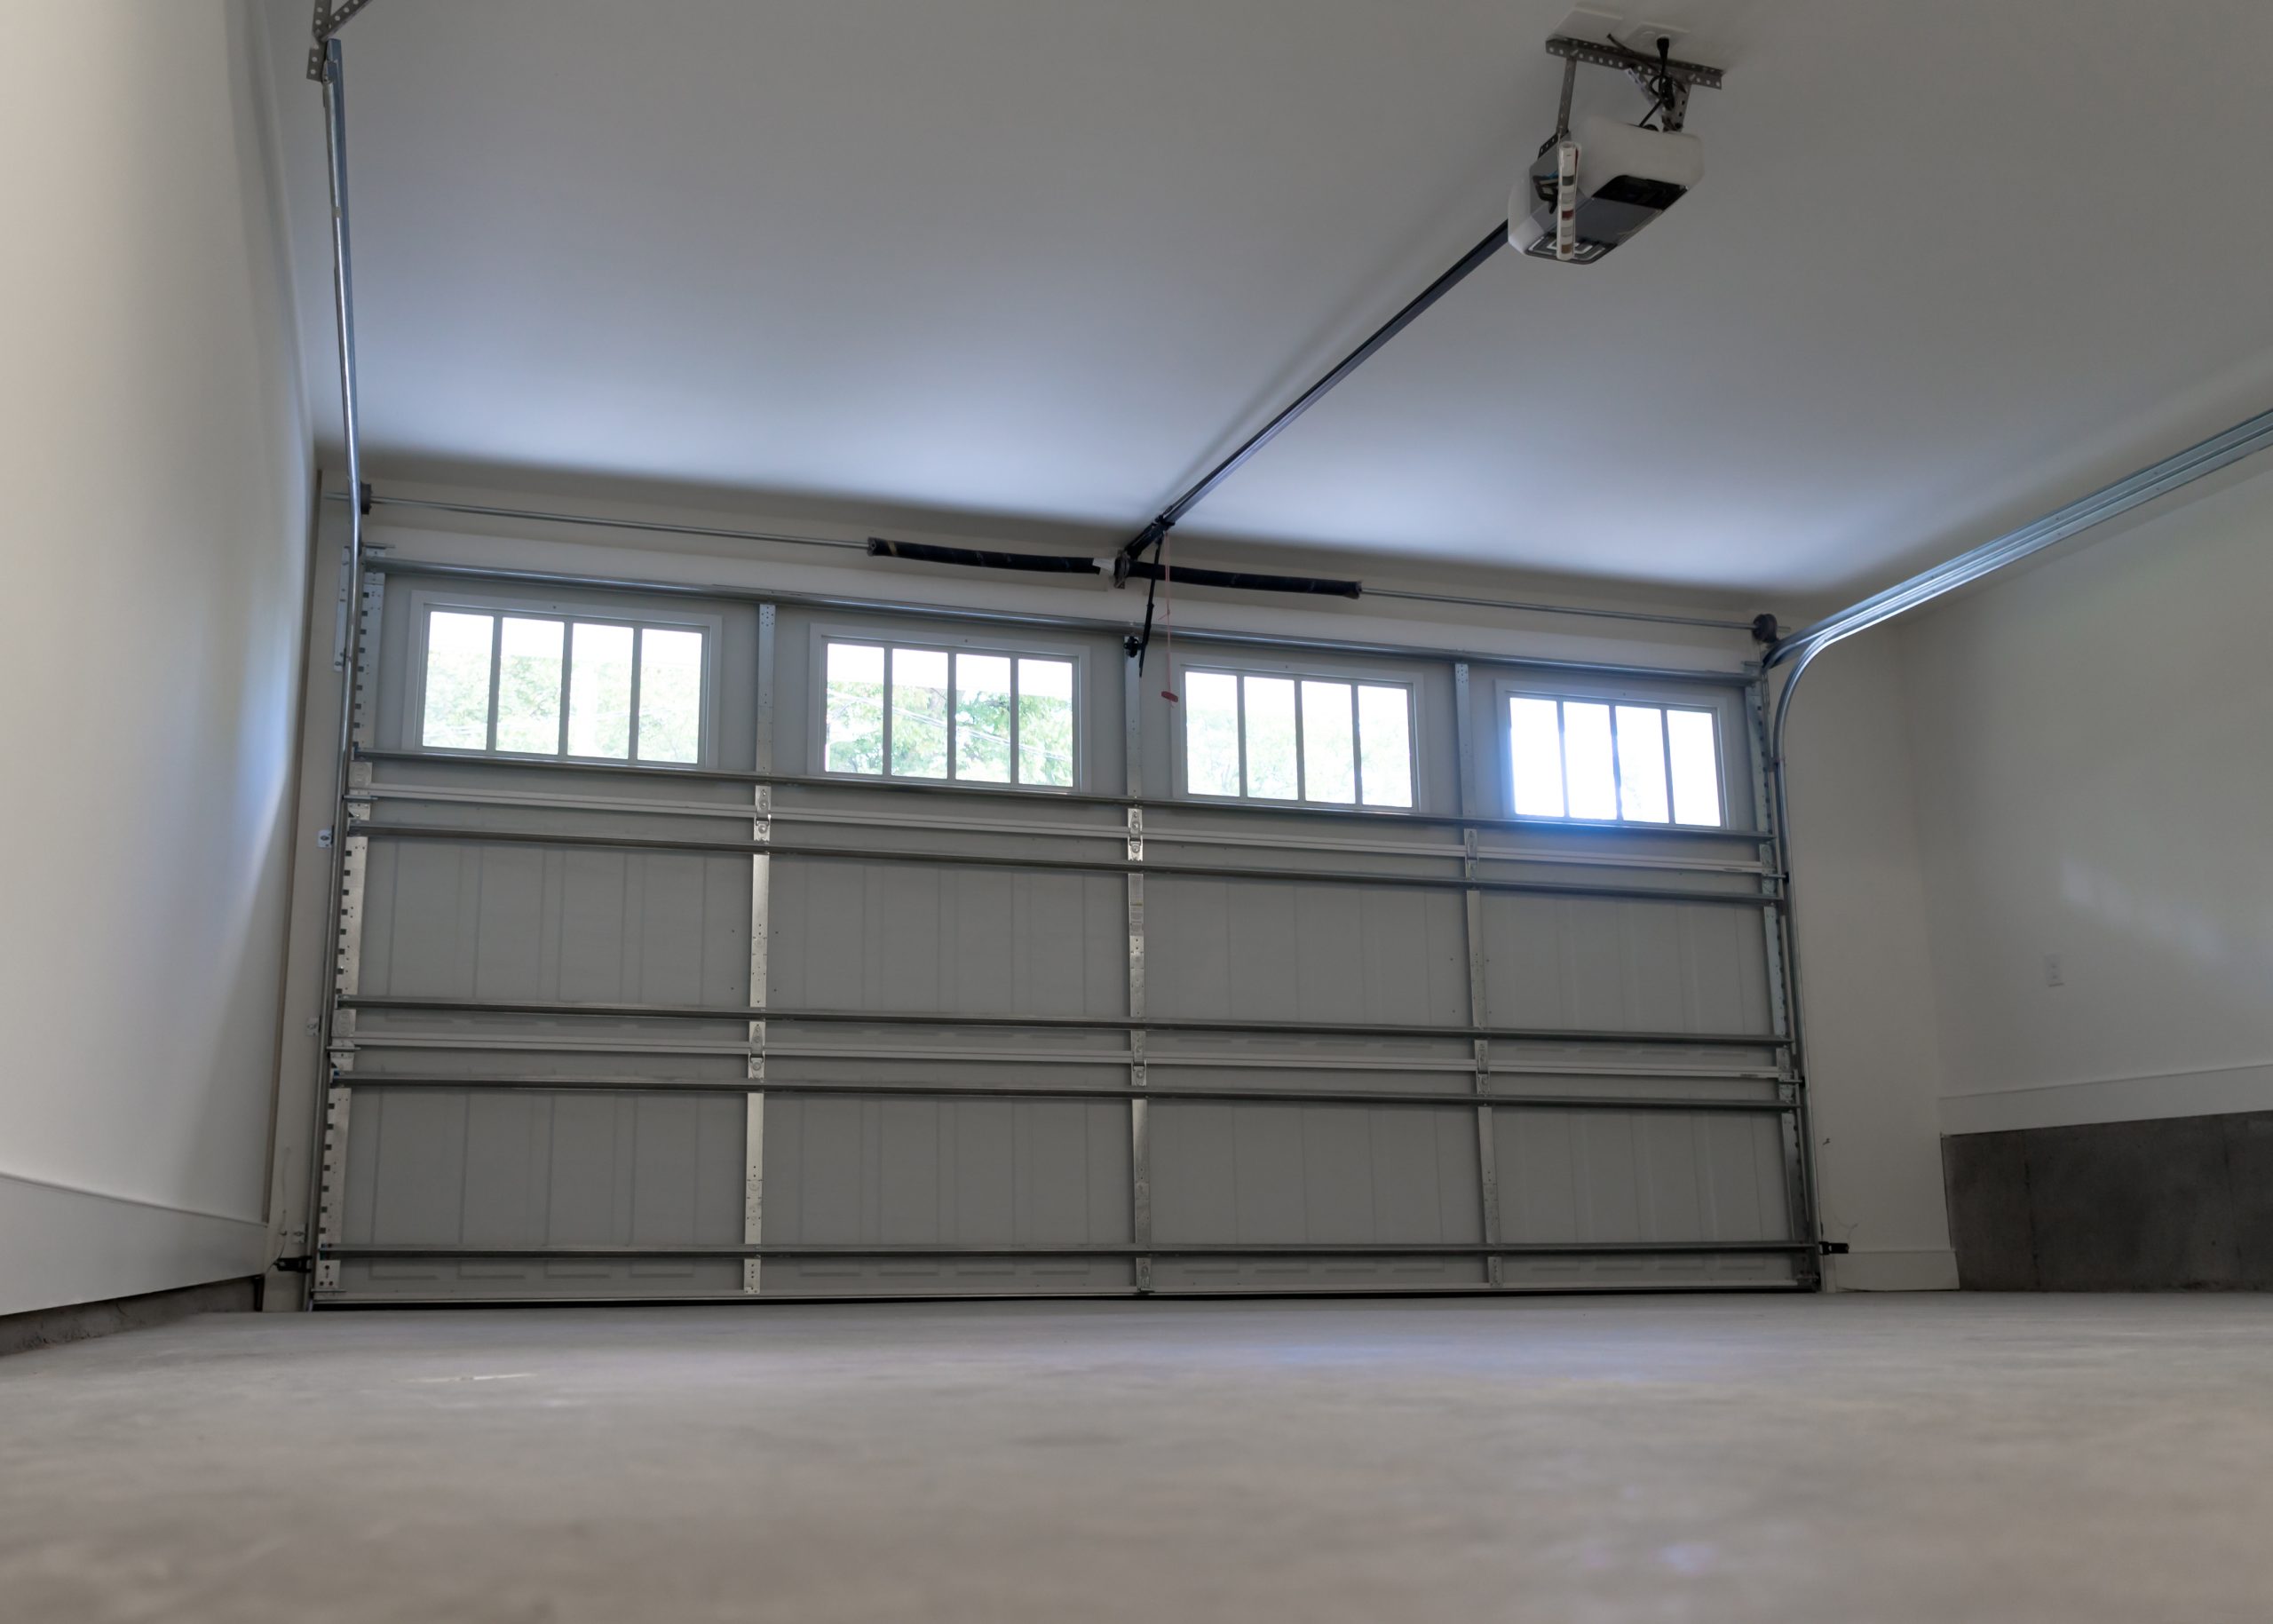 residential garage door by NOCO door services